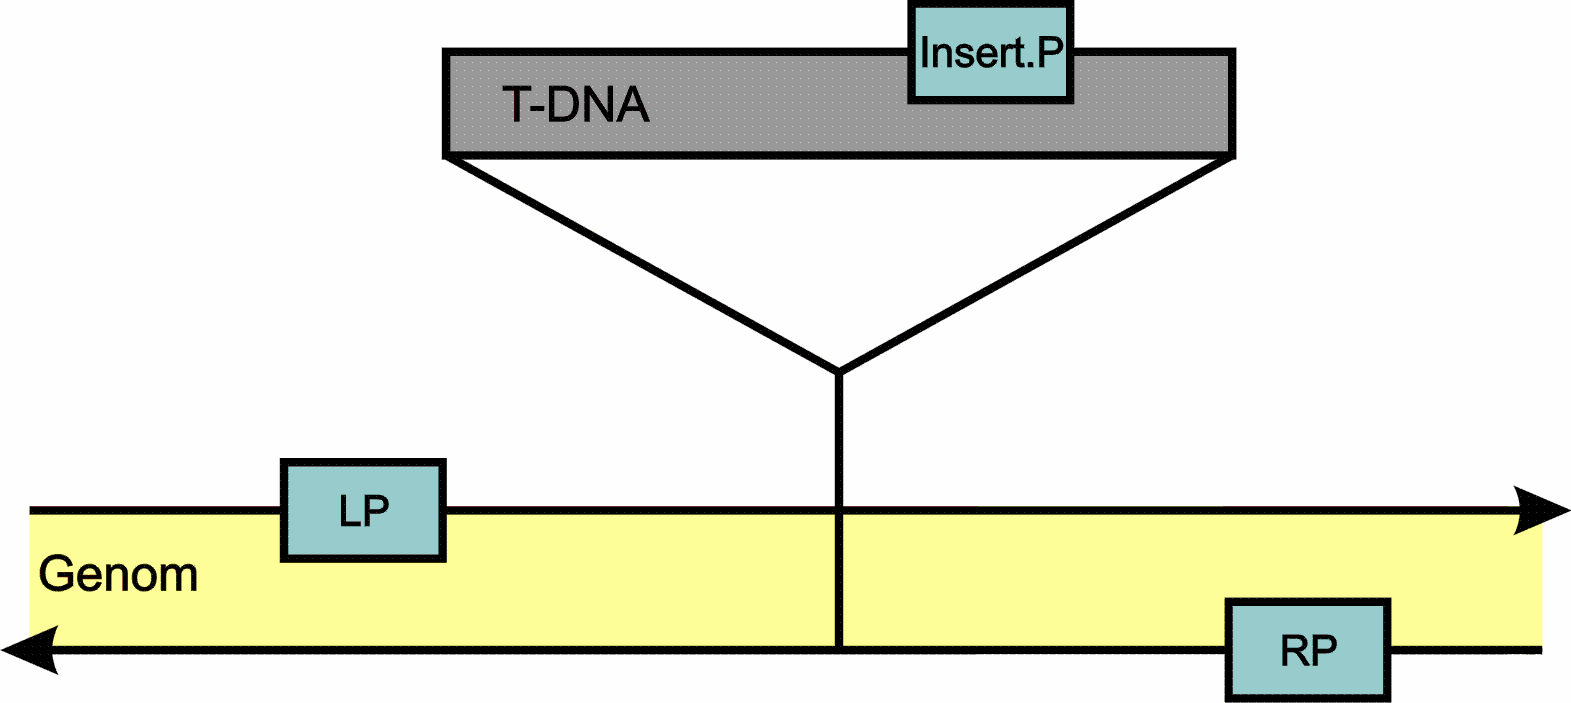 Zur Analyse auf Homozygotie bzgl. einer T-DNA-Insertion wurden zwei PCR-Ansätze mit der isolierten DNA der Insertionslinien sowie von Col-0 als Kontrolle durchgeführt.